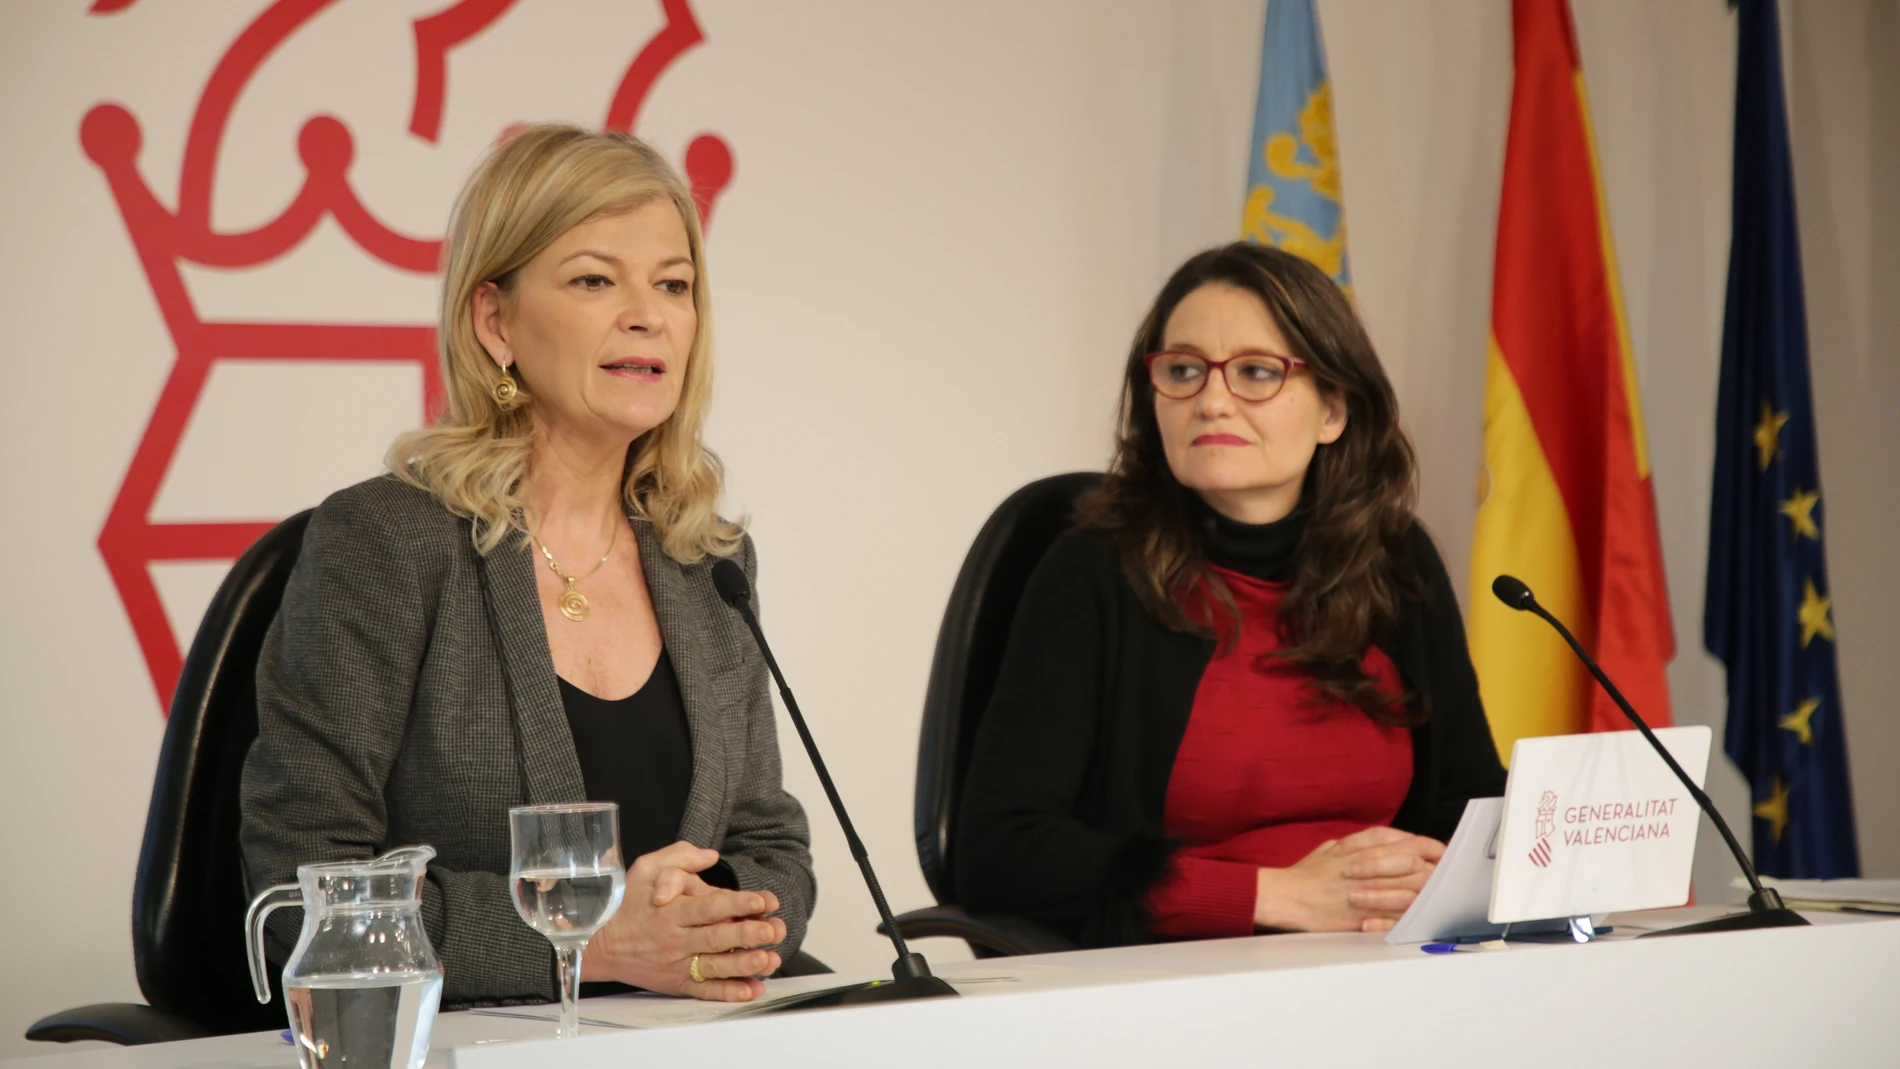 La consellera de Justicia, Gabriela Bravo, junto a la vicepresidenta, Mónica Oltra